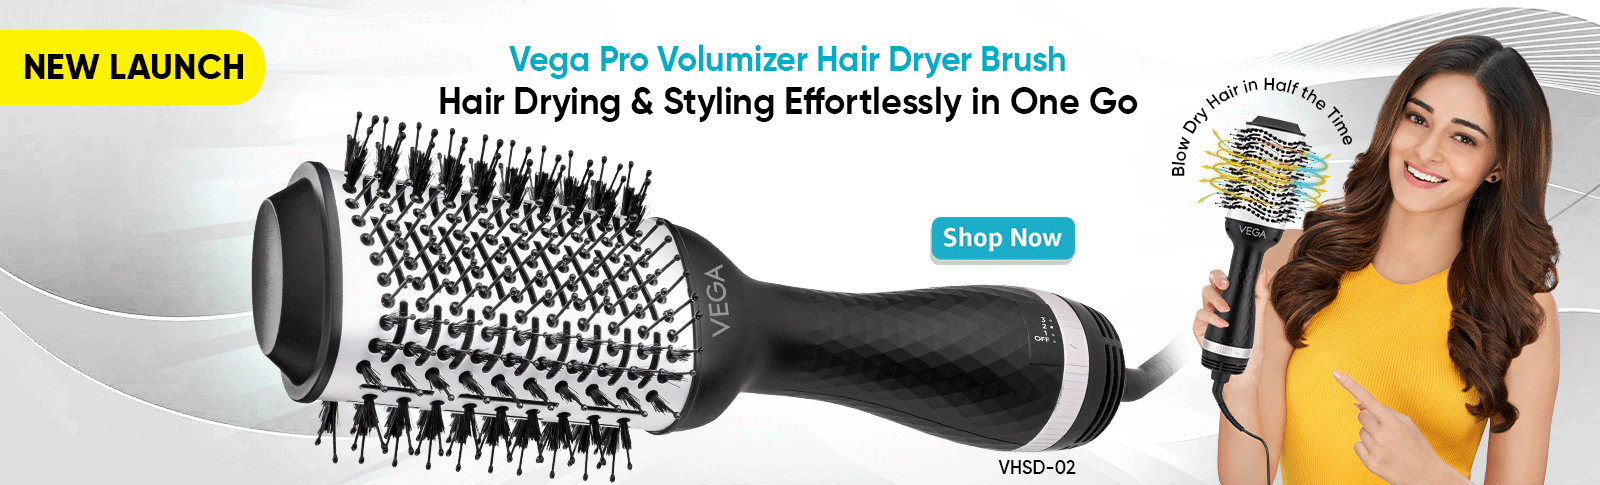 Vega Hair Dryer Brush